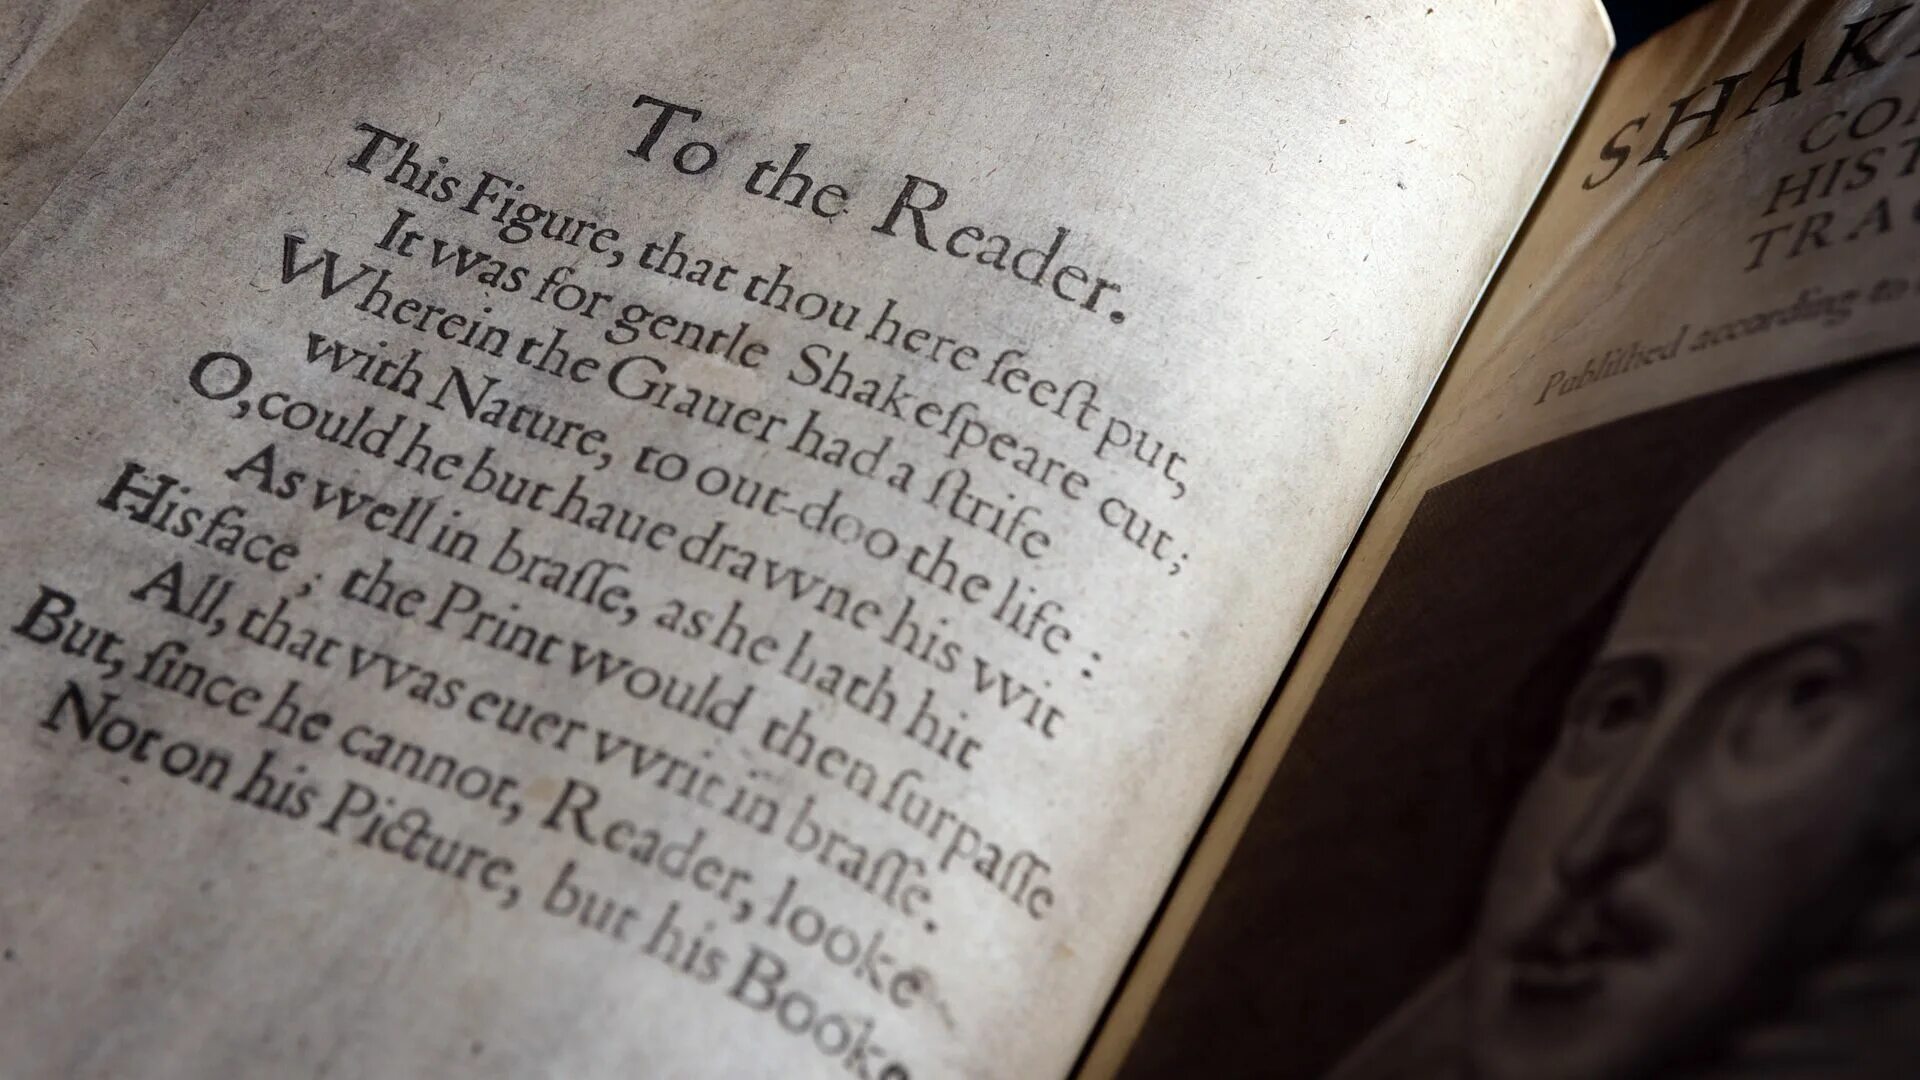 Первое Фолио Шекспира. Фолио Шекспира. "First Folio" Шекспира. Шекспир первое издание пьес. Шекспир выставка в библиотеке